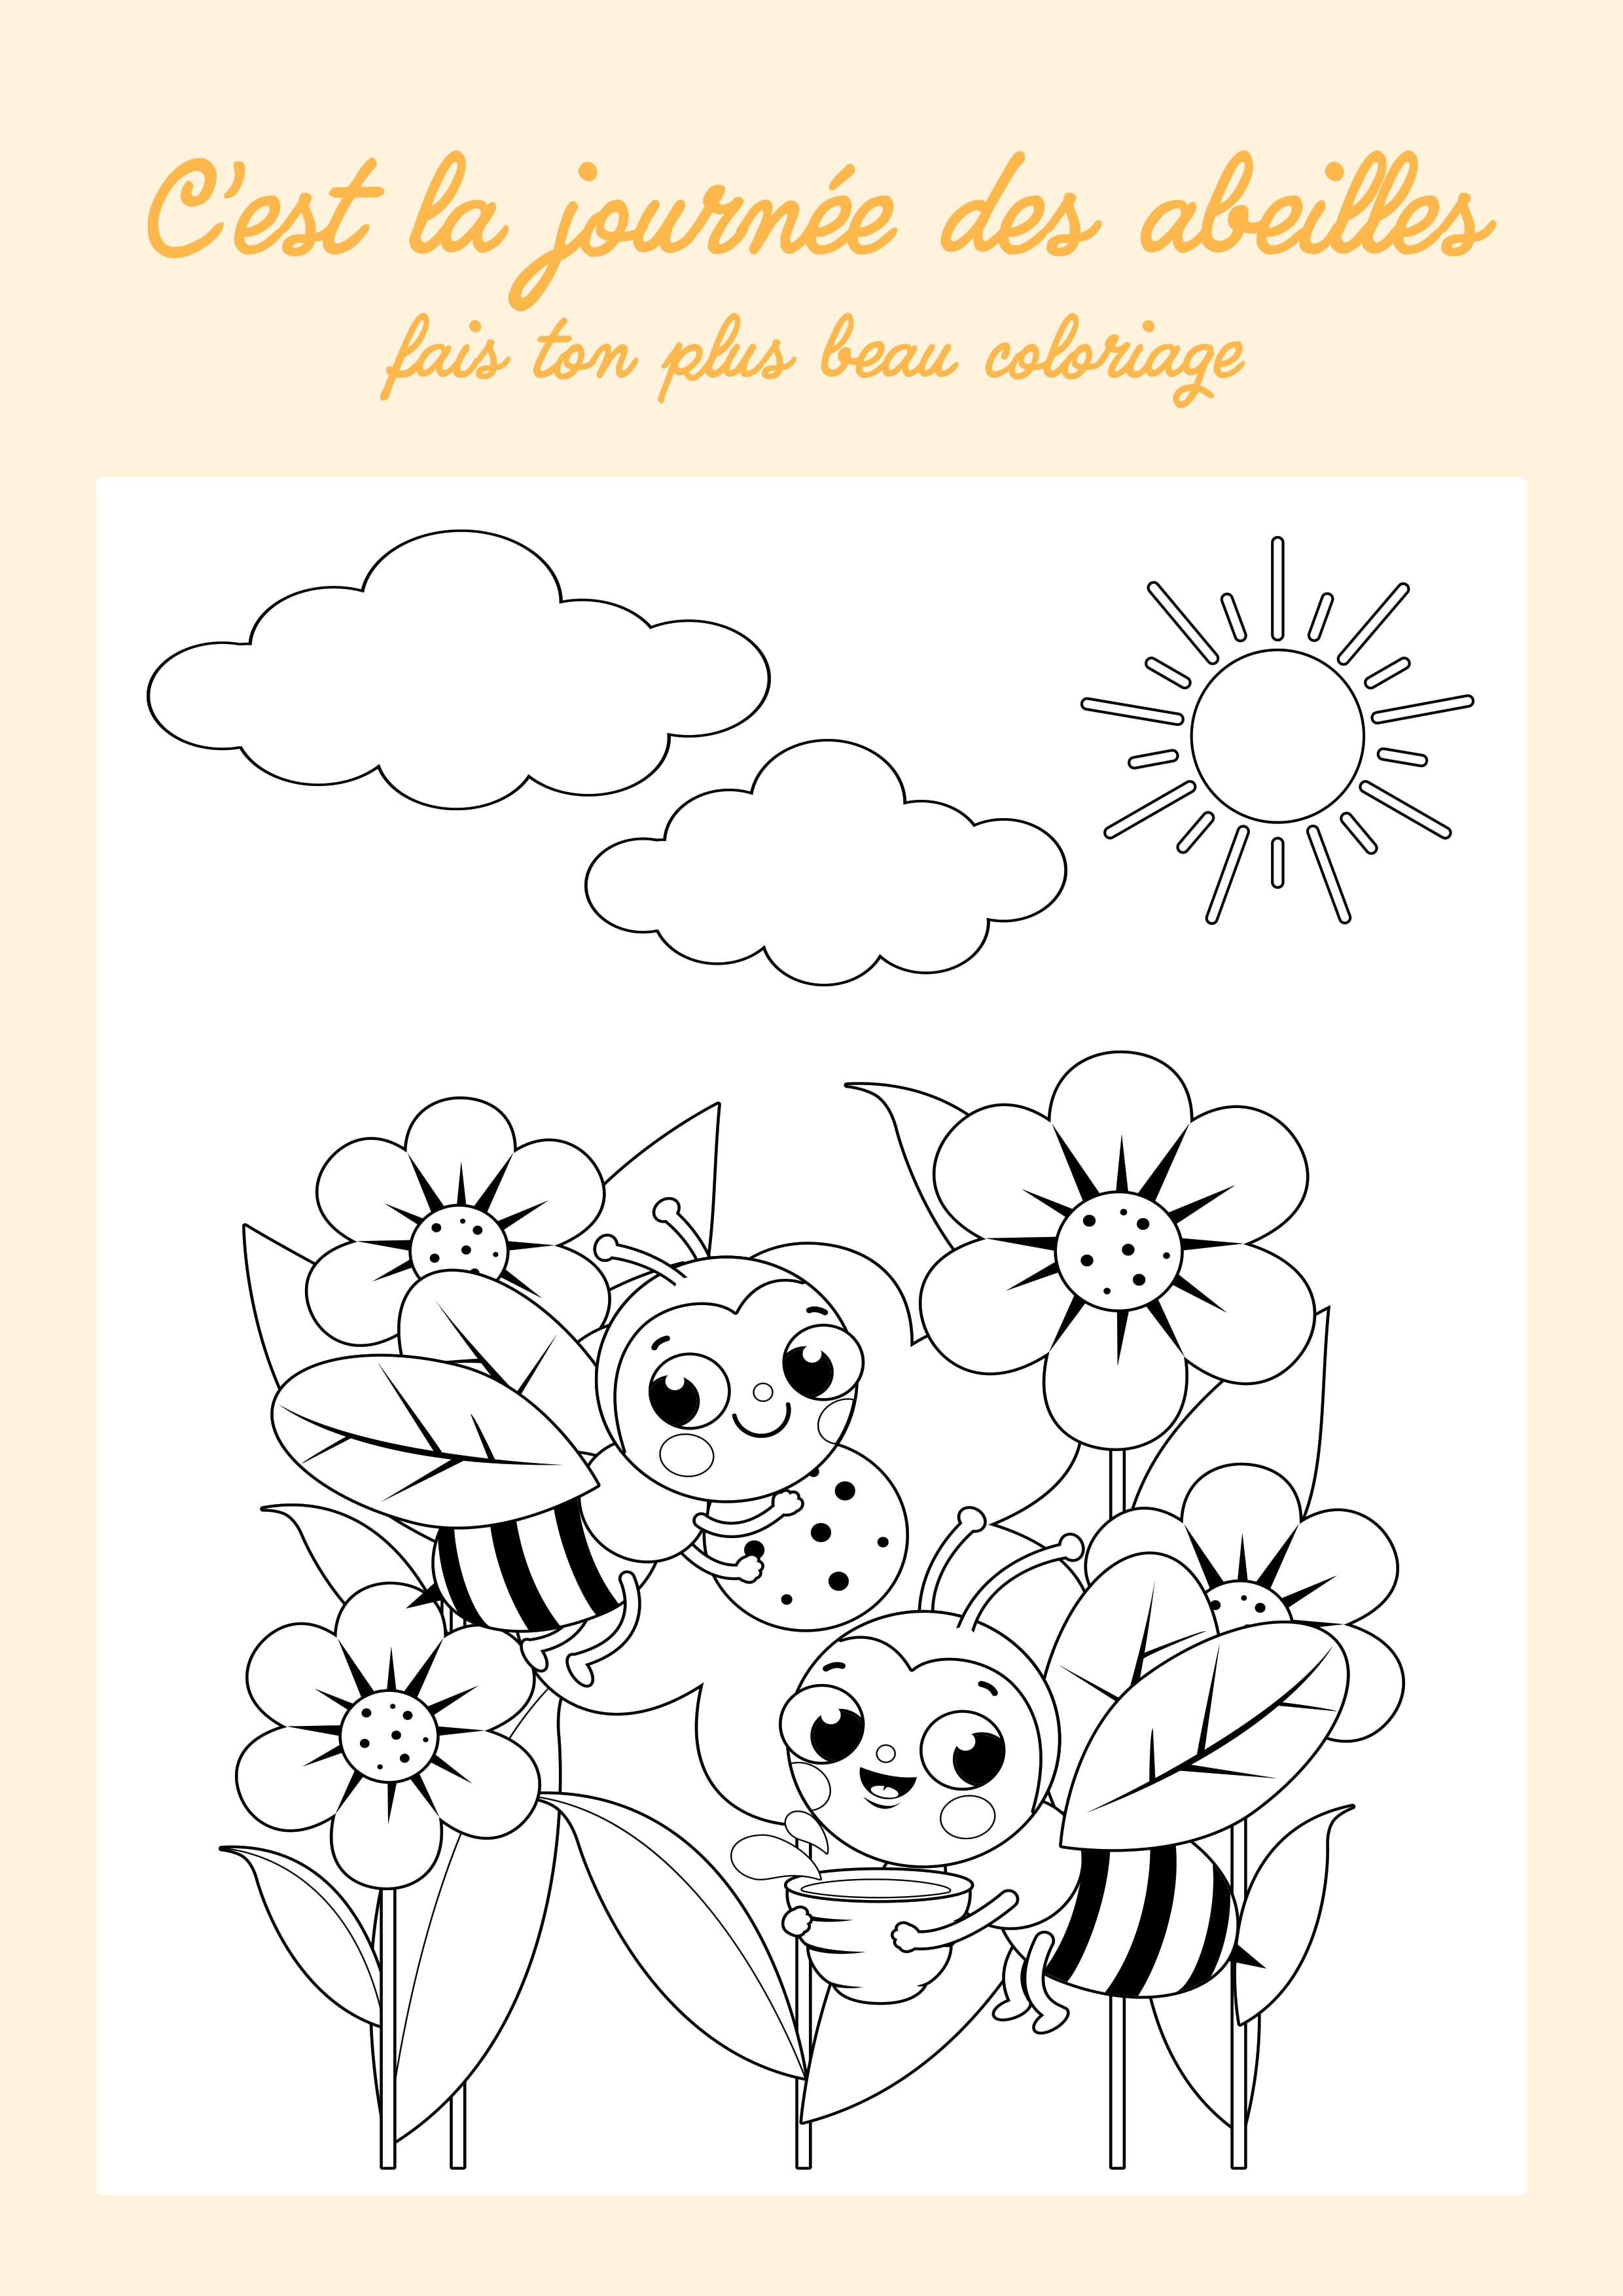 Coloriage pour enfant avec des abeilles